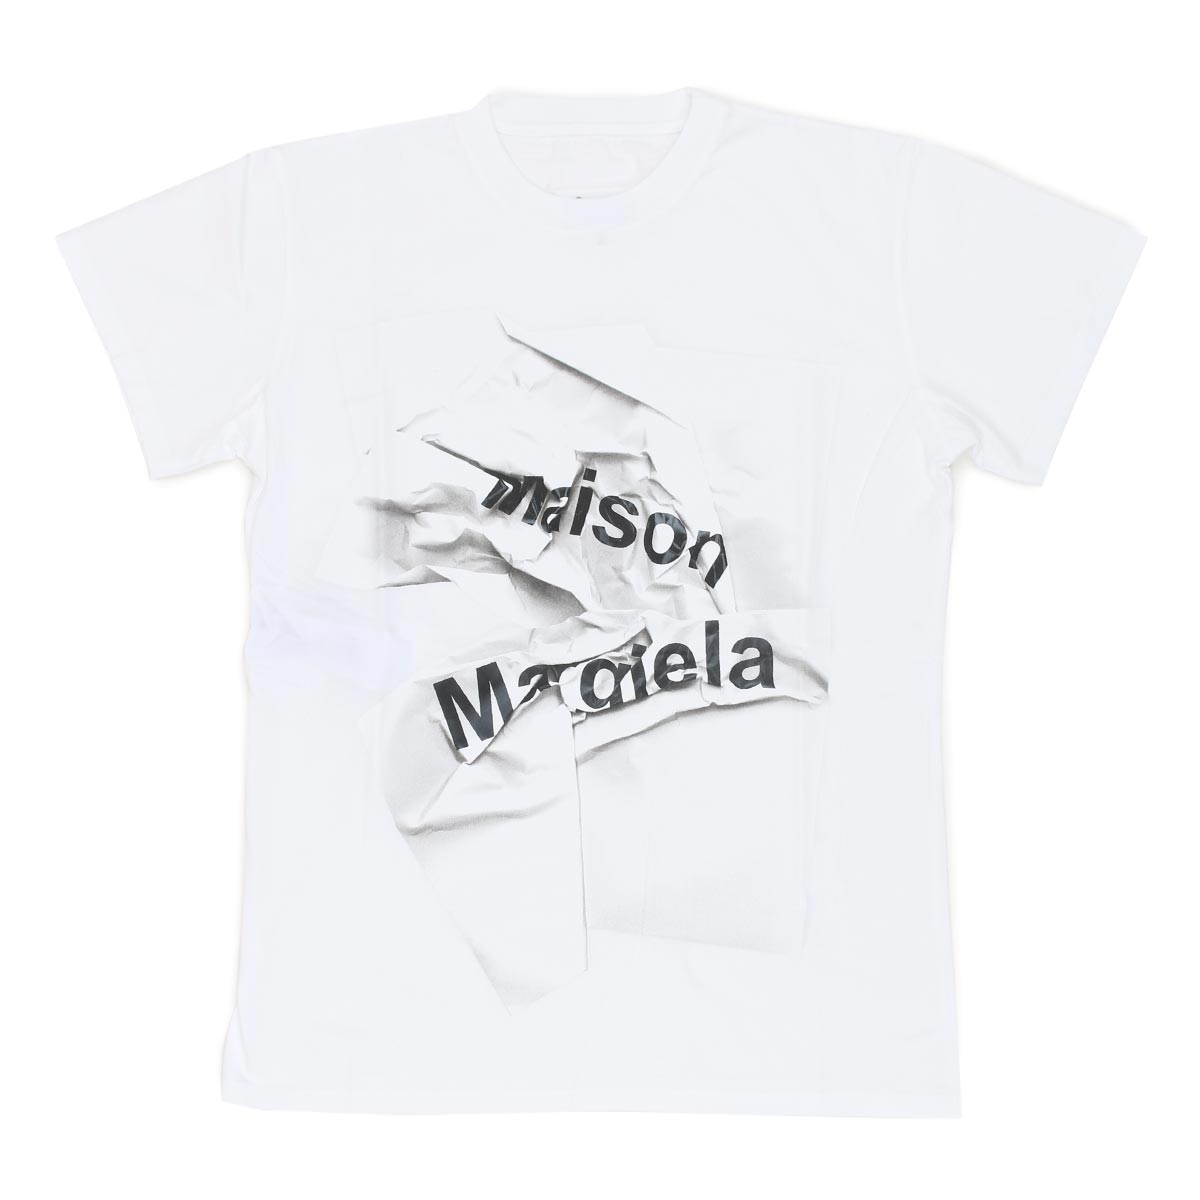 メゾンマルジェラ Tシャツ 半袖 トップス レディース クルーネック ロゴT ホワイト&ブラック S51GC0499 S22816 100  MAISON MARGIELA